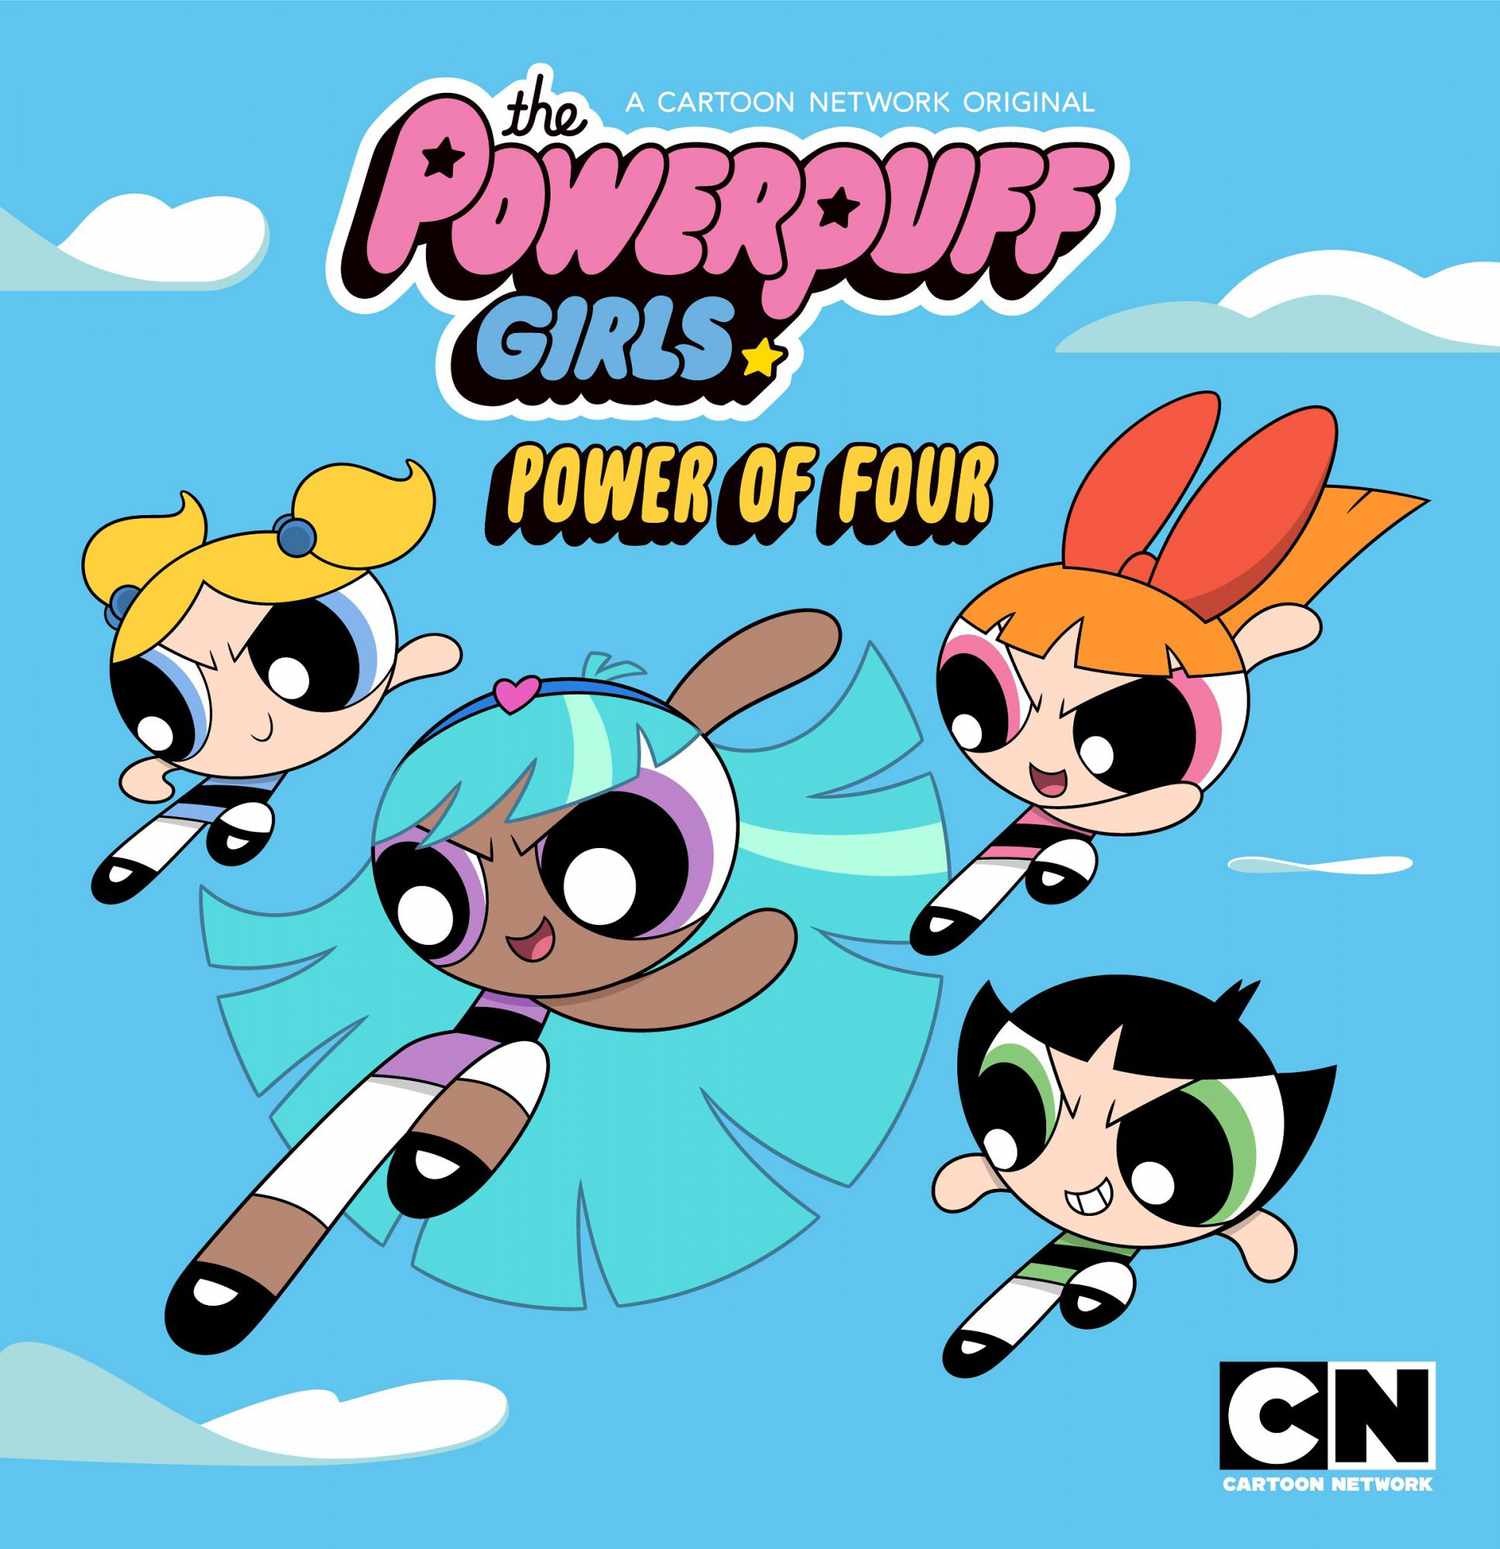 Powerpuff girls characters